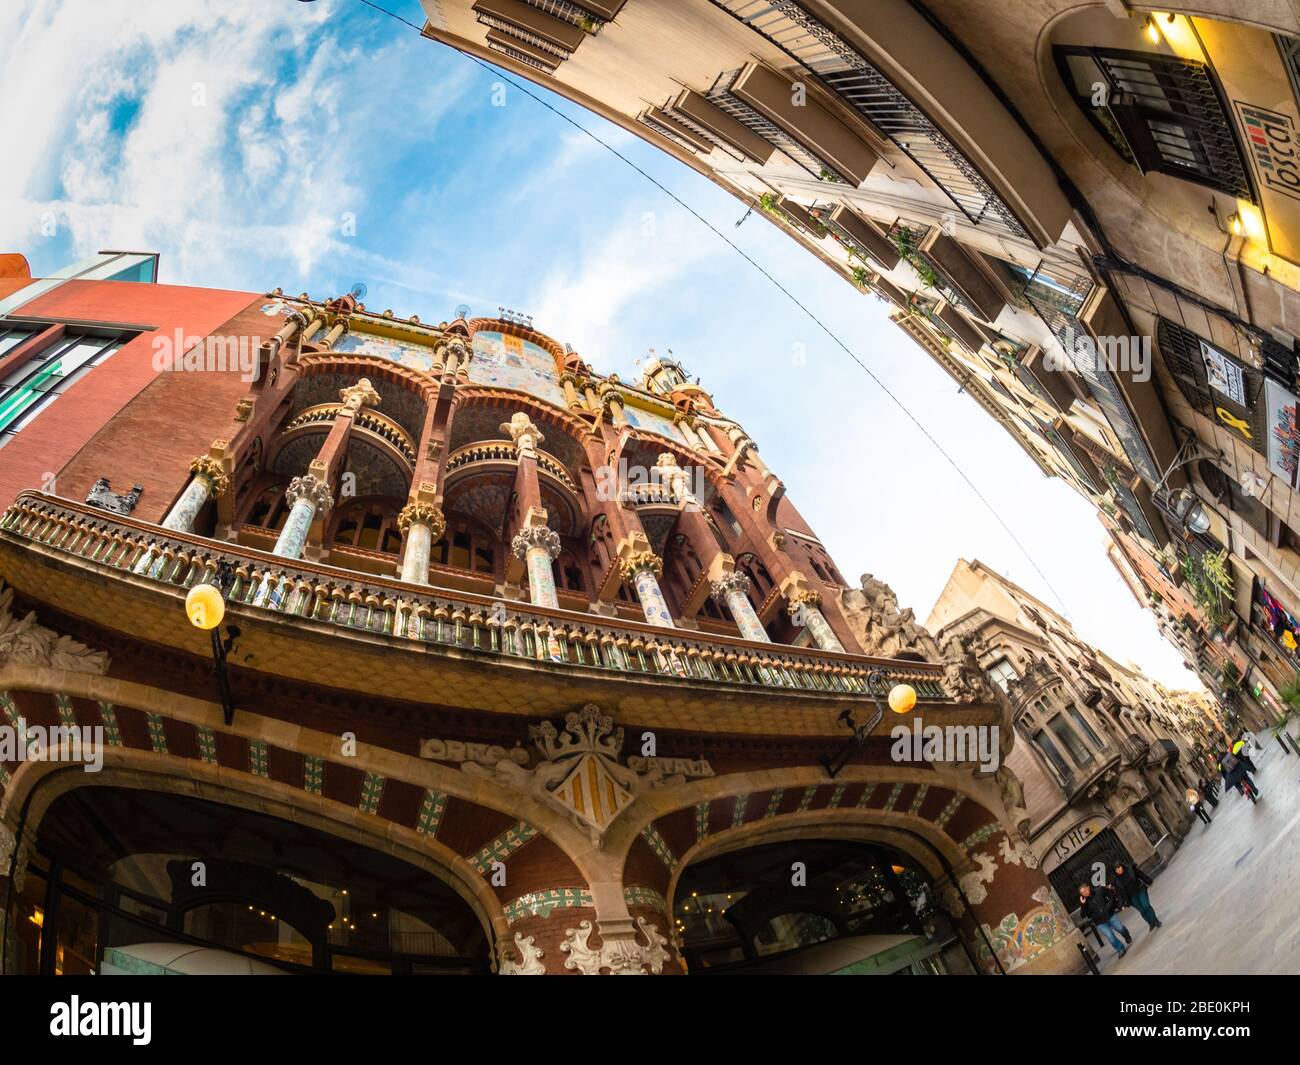 Fisheye lens view of the Palau de la Musica and the Carrer de Sant Pere Mes Alt, Barcelona, Spain. Stock Photo